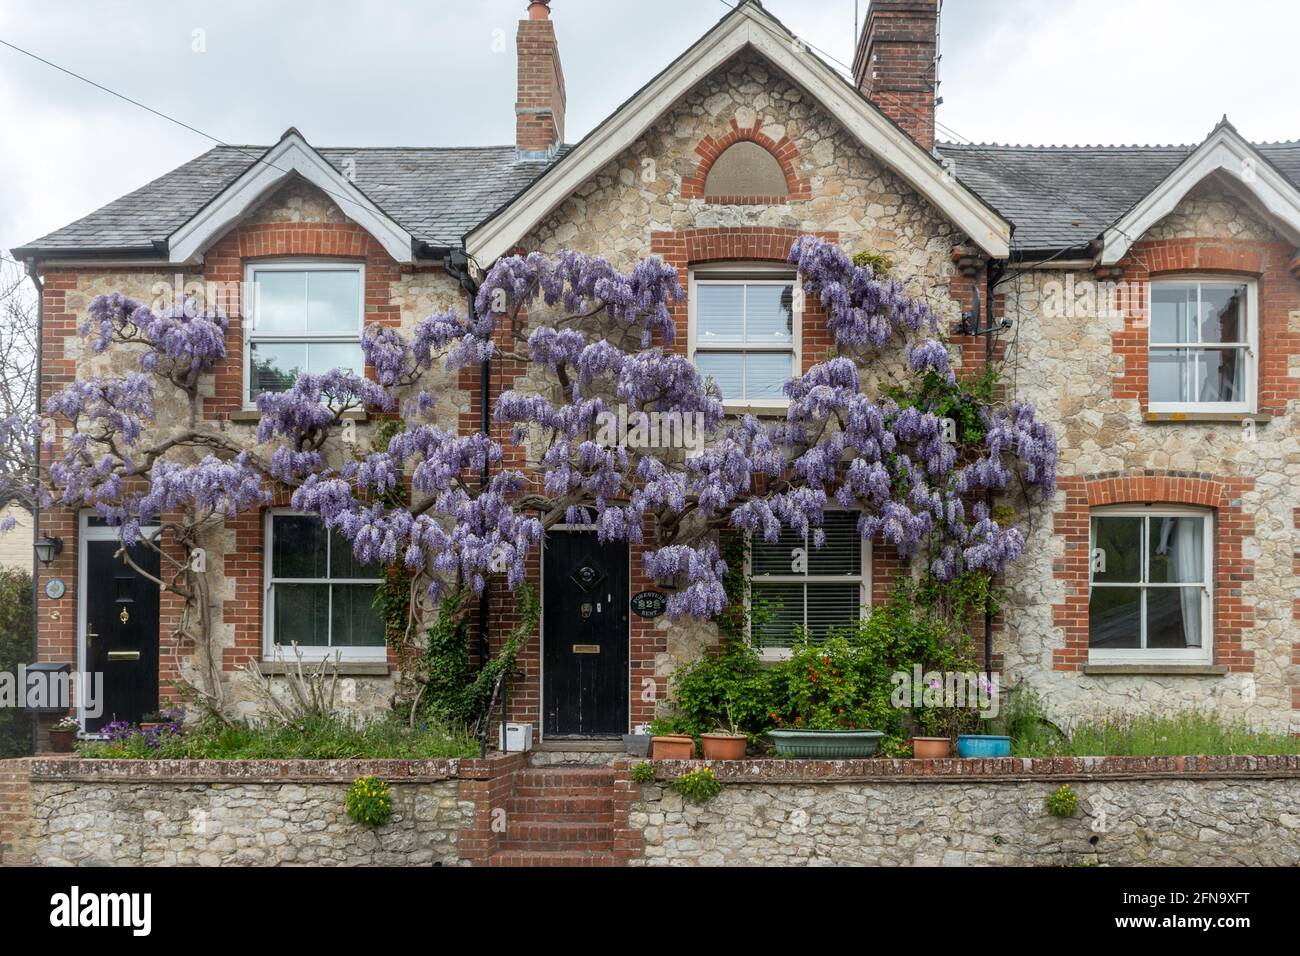 Wisteria qui grandit à l'avant d'une maison, plante à fleurs violettes au printemps, Royaume-Uni Banque D'Images